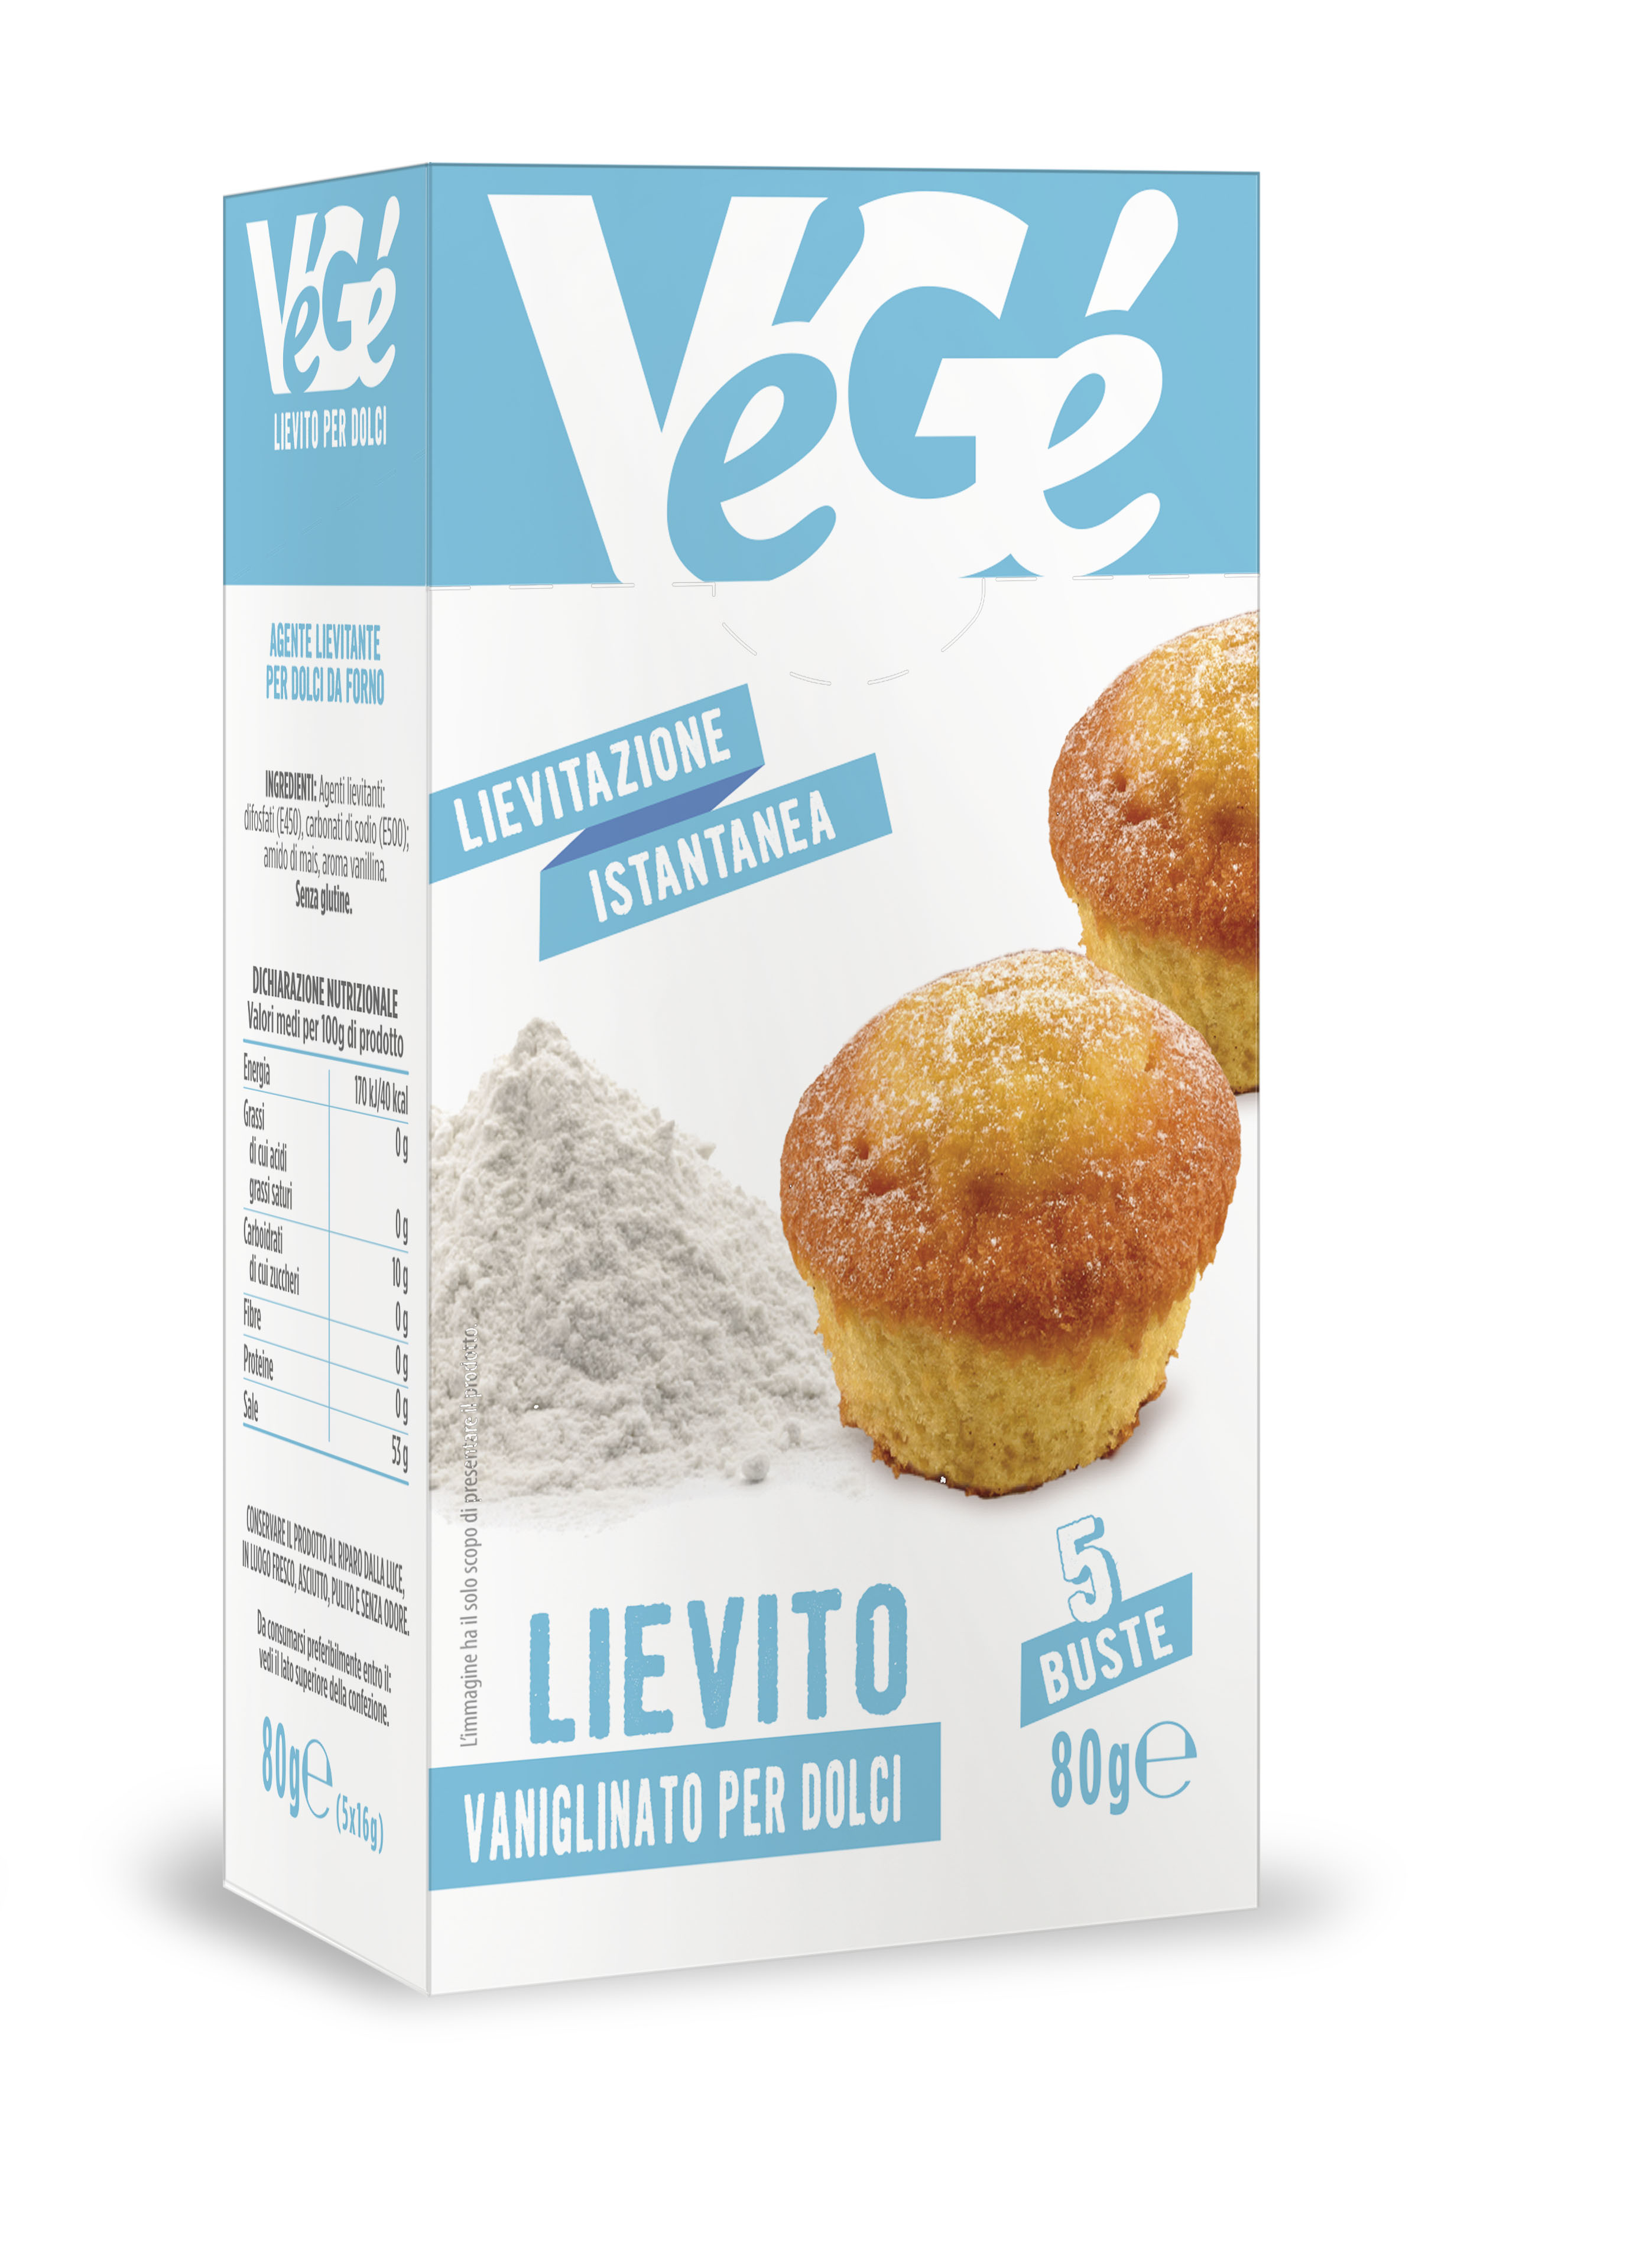 Lievito vanigliato per dolci Vegé GDO (Grande Distribuzione Organizzata)